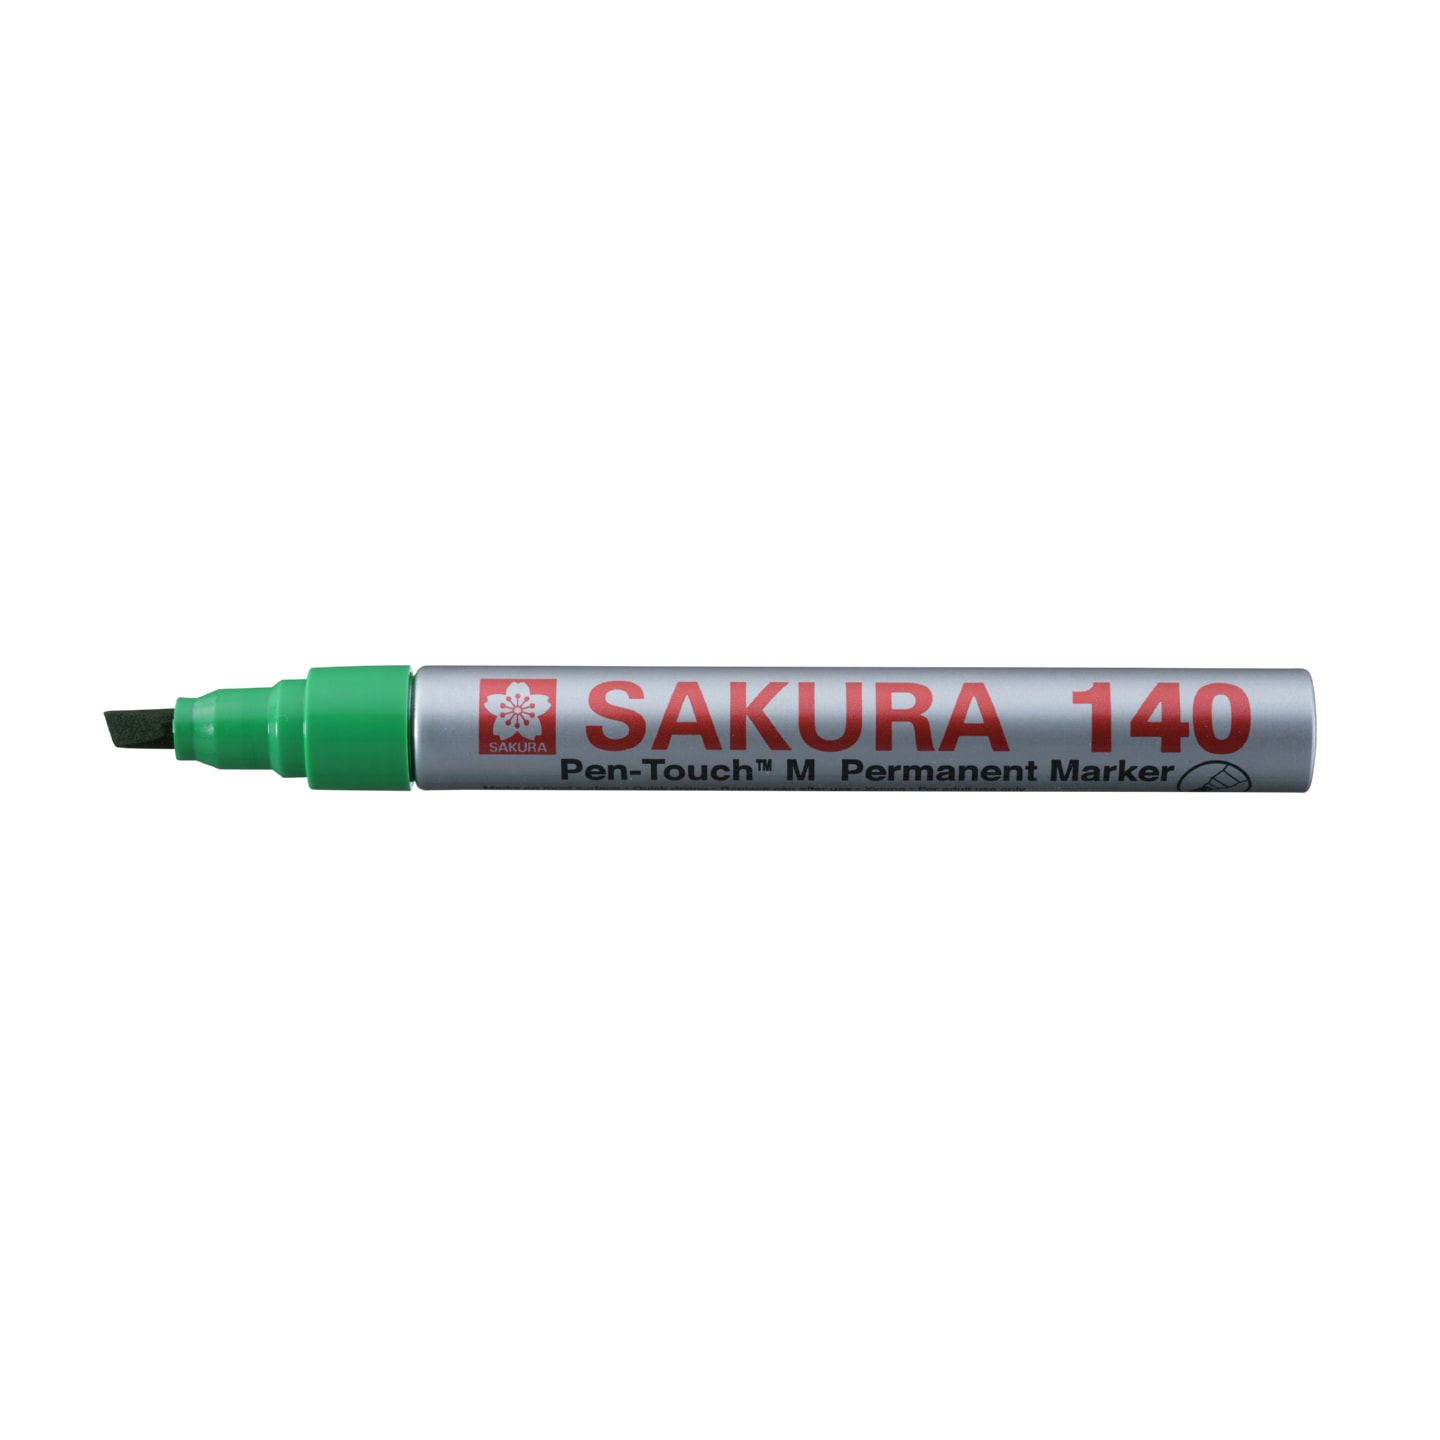 Маркер Sakura 140 перманентный для гладких поверхностей стержень 4.0мм 4 цвета в ассортименте